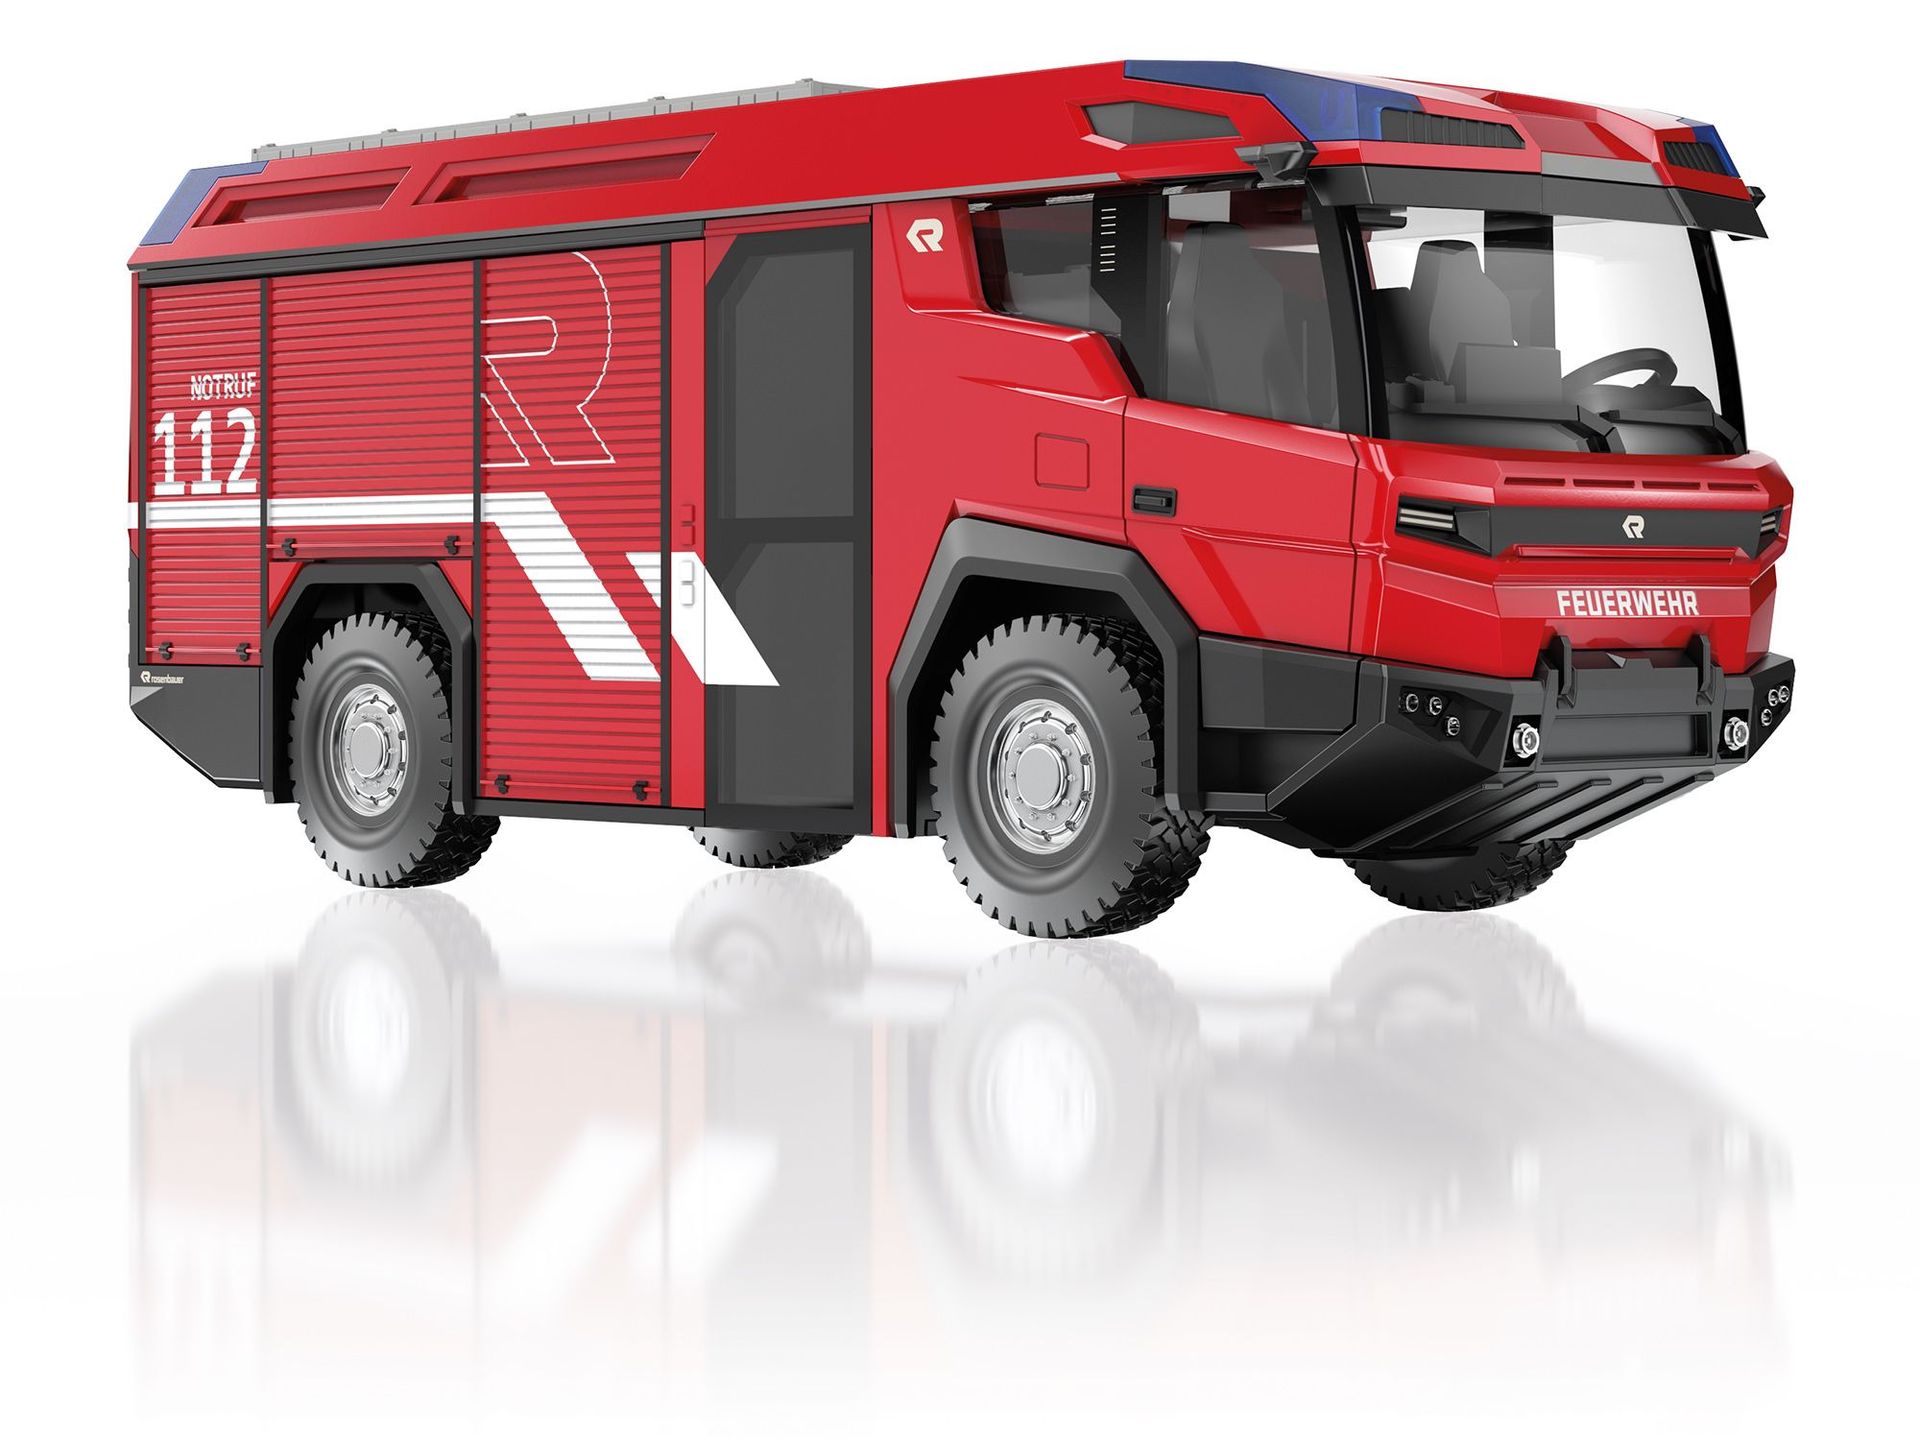 Wiking 043110 - Feuerwehr - Rosenbauer RT R-Wing Design 1:32